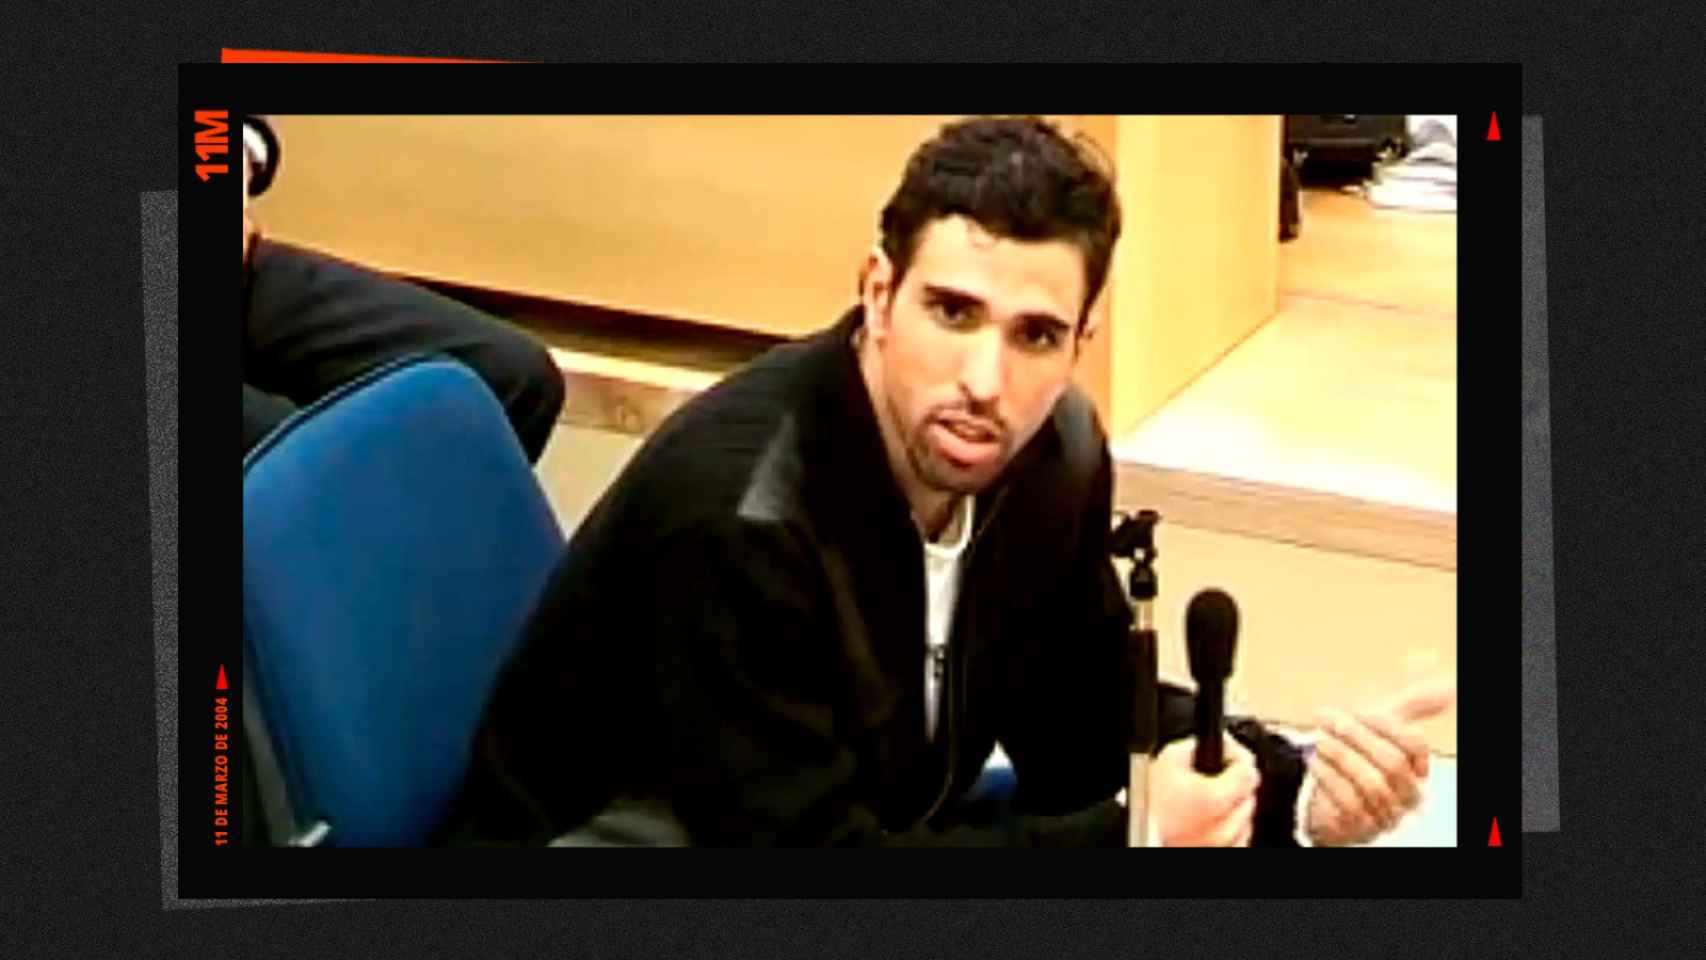 Jamal Zougam durante el juicio del 11-M.